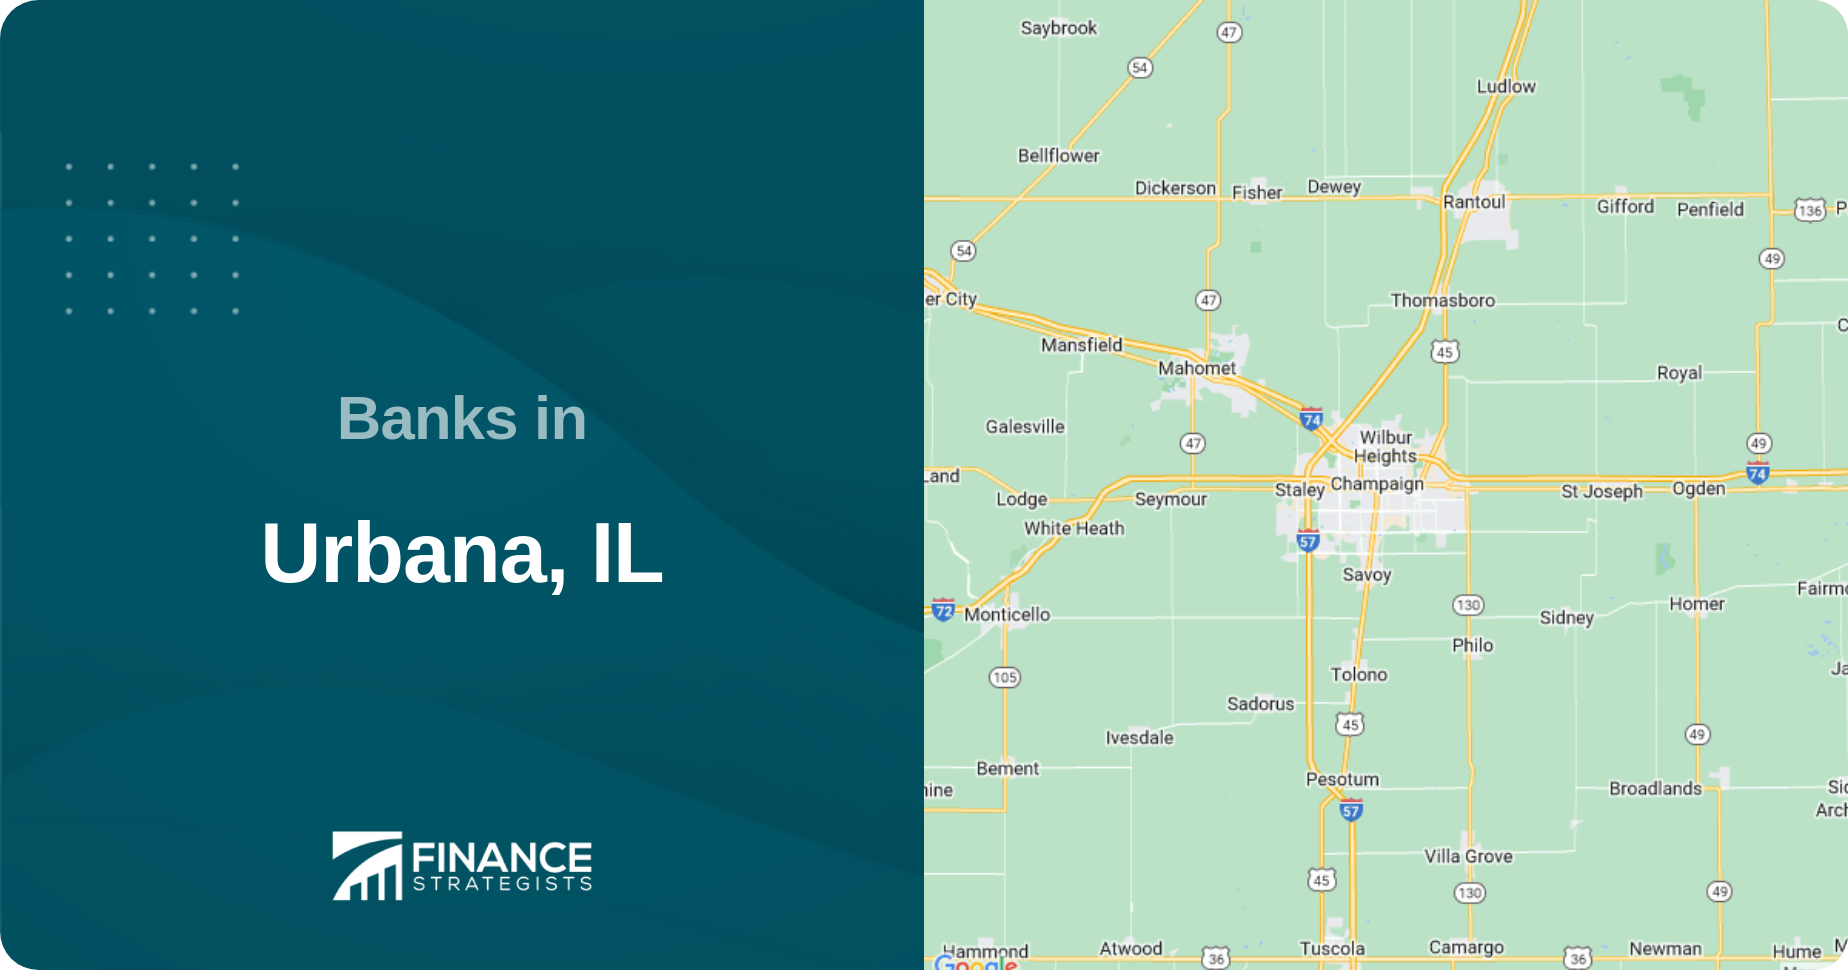 Banks in Urbana, IL